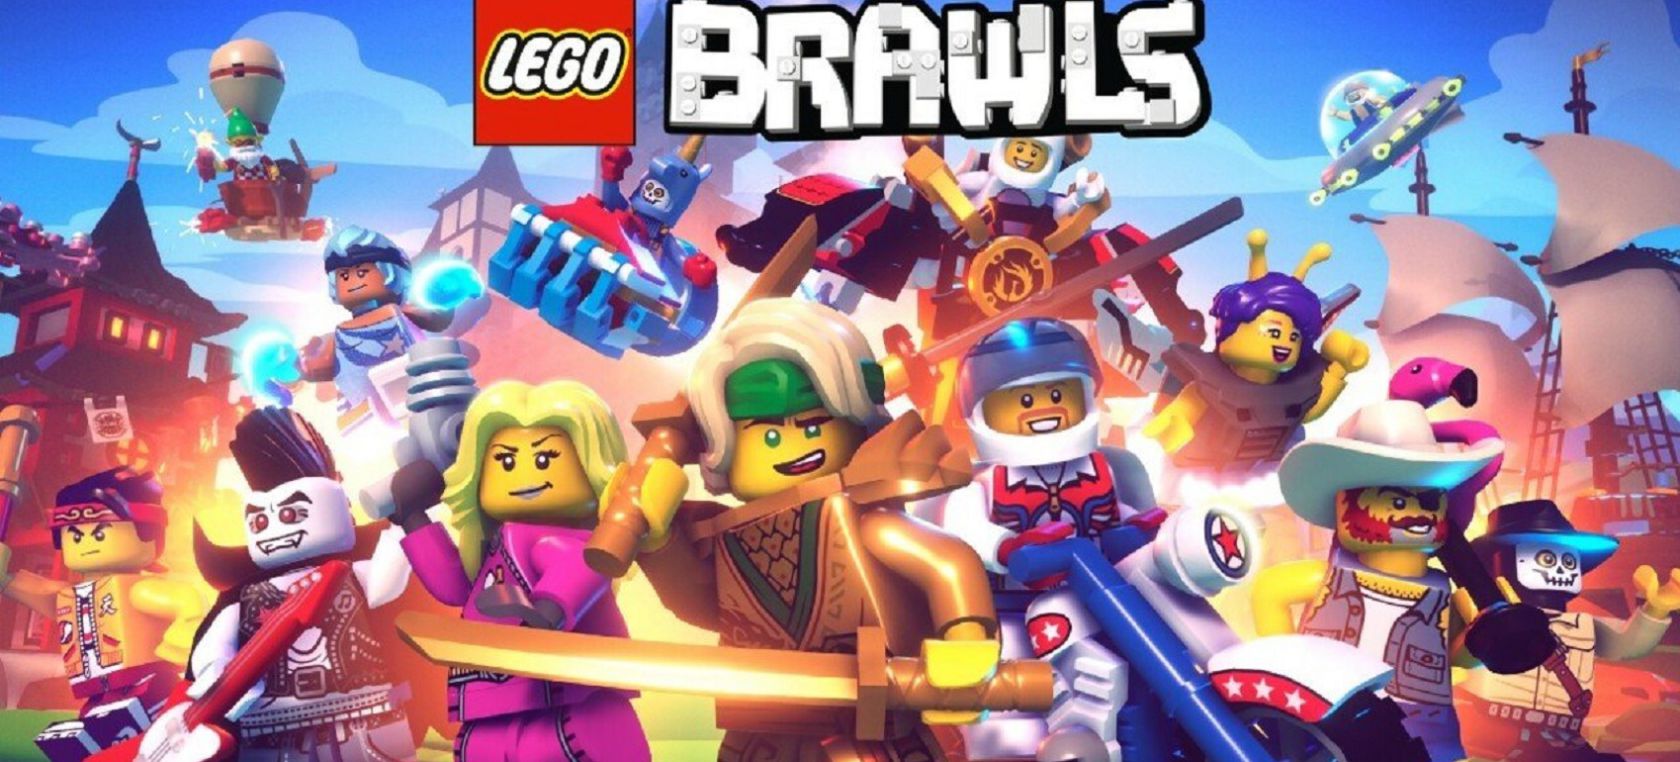 Lego Brawls